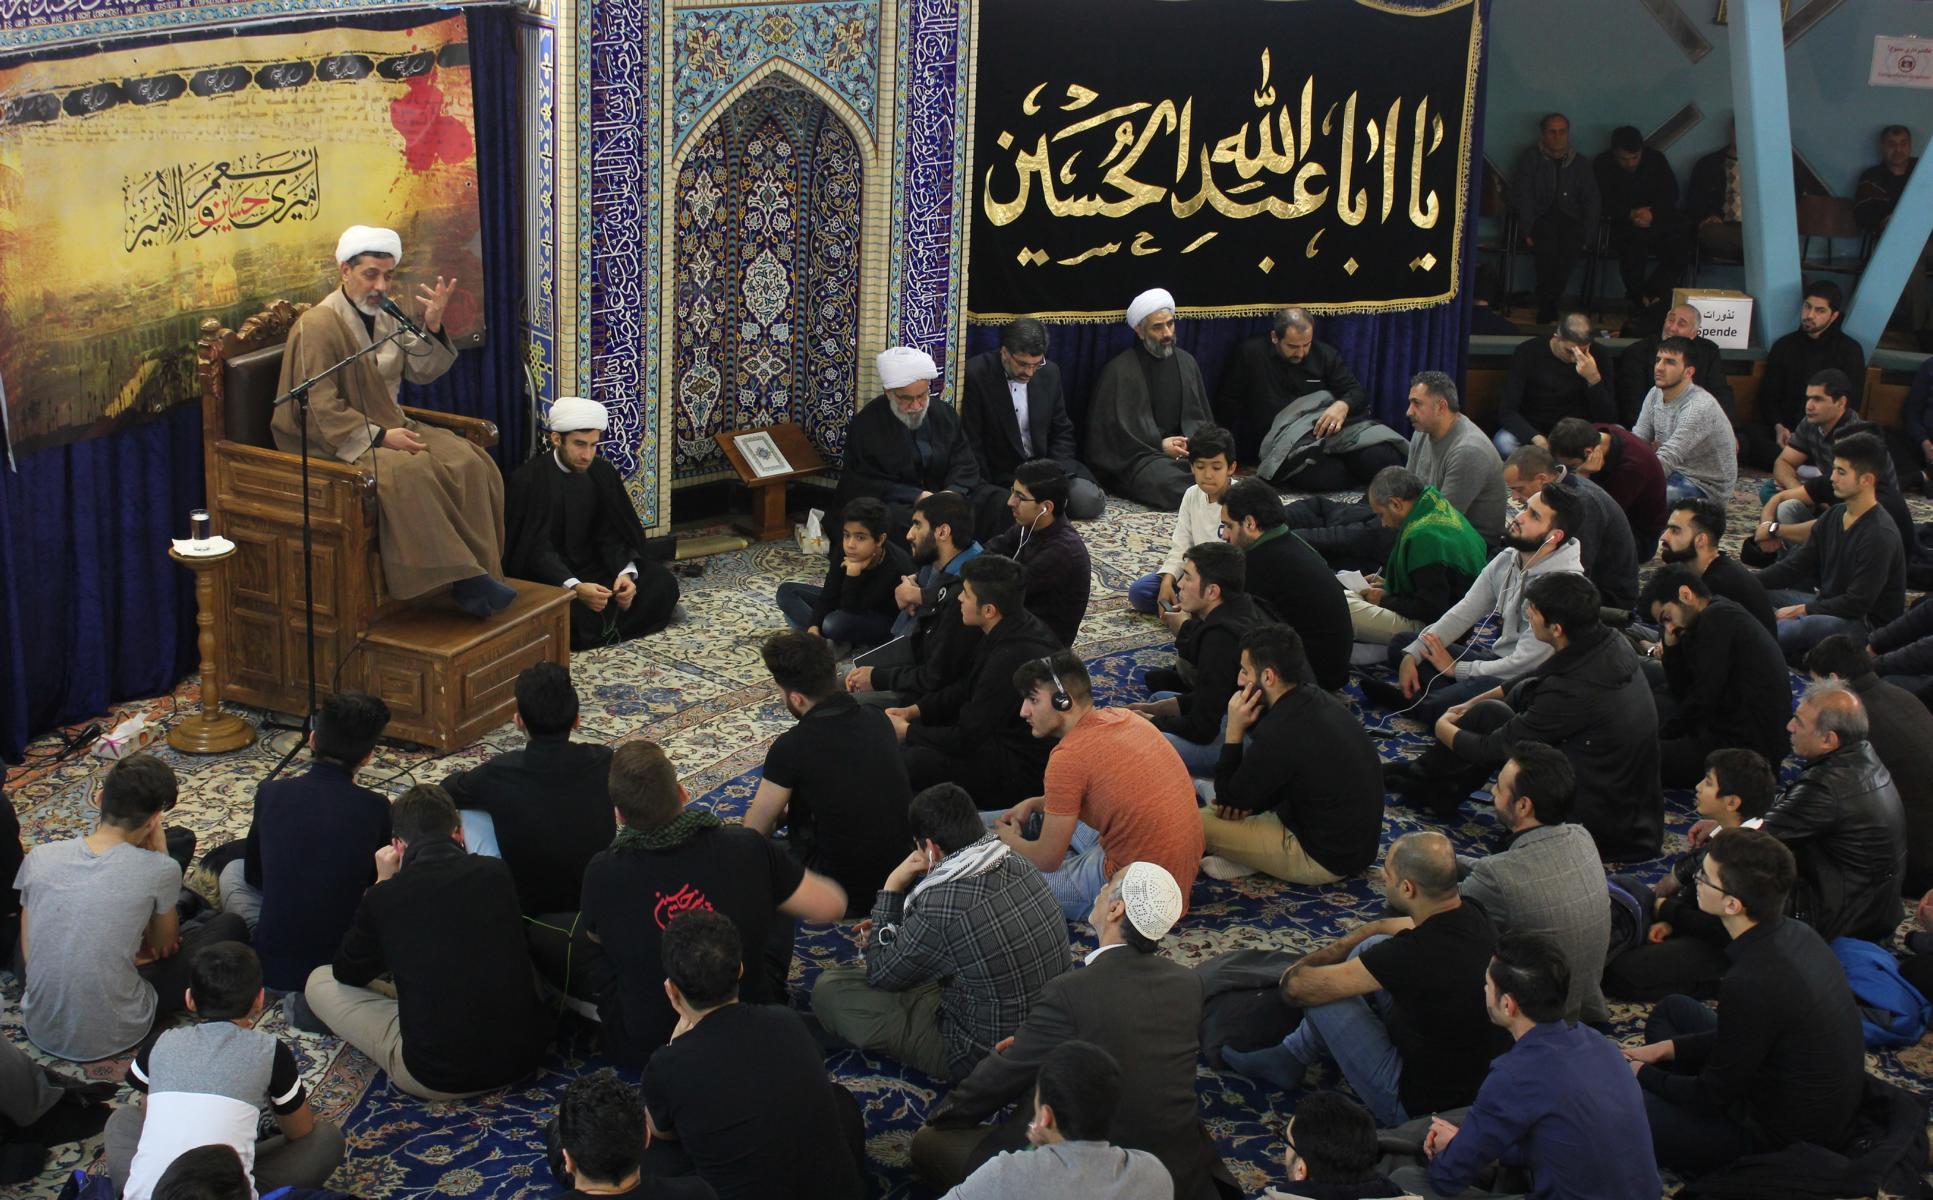 برگزاری مراسم دهه آخر ماه صفر در مرکز اسلامی امام علی (ع) هامبورگ با سخنرانی حجت الاسلام رفیعی